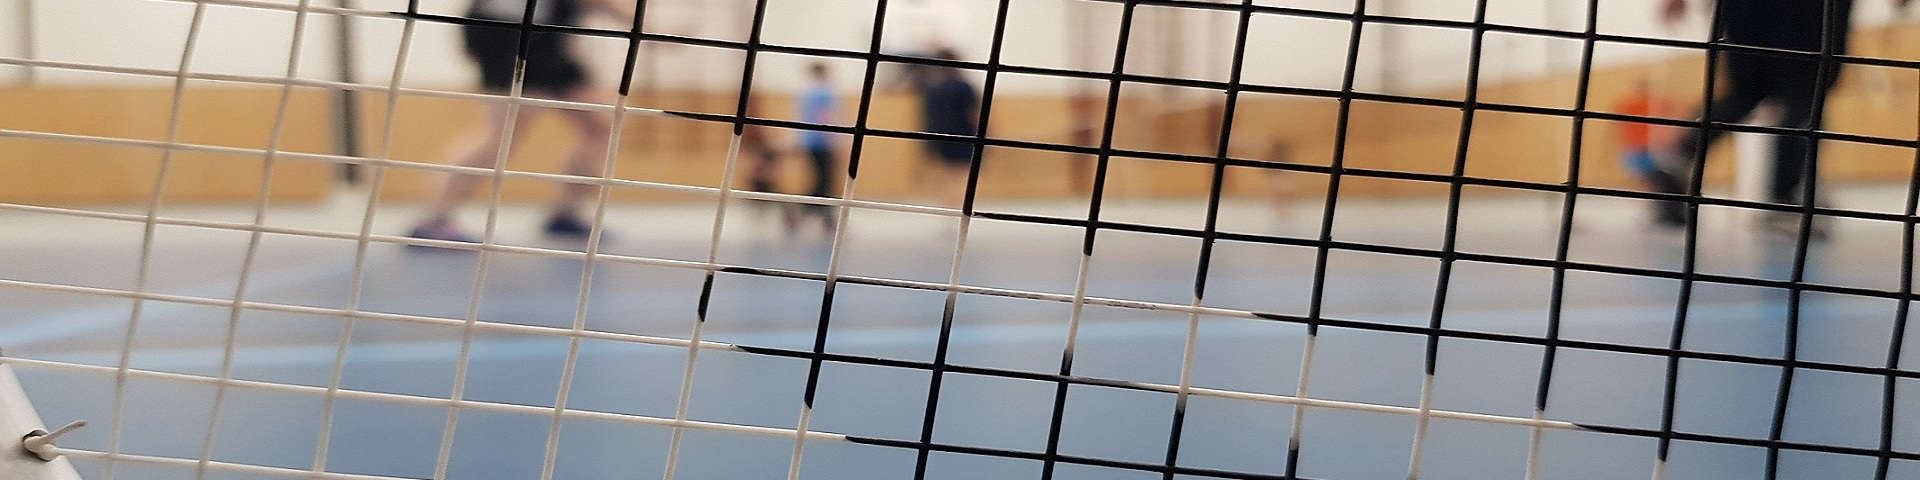 Saisonabschlussbericht Badminton 2019/2020